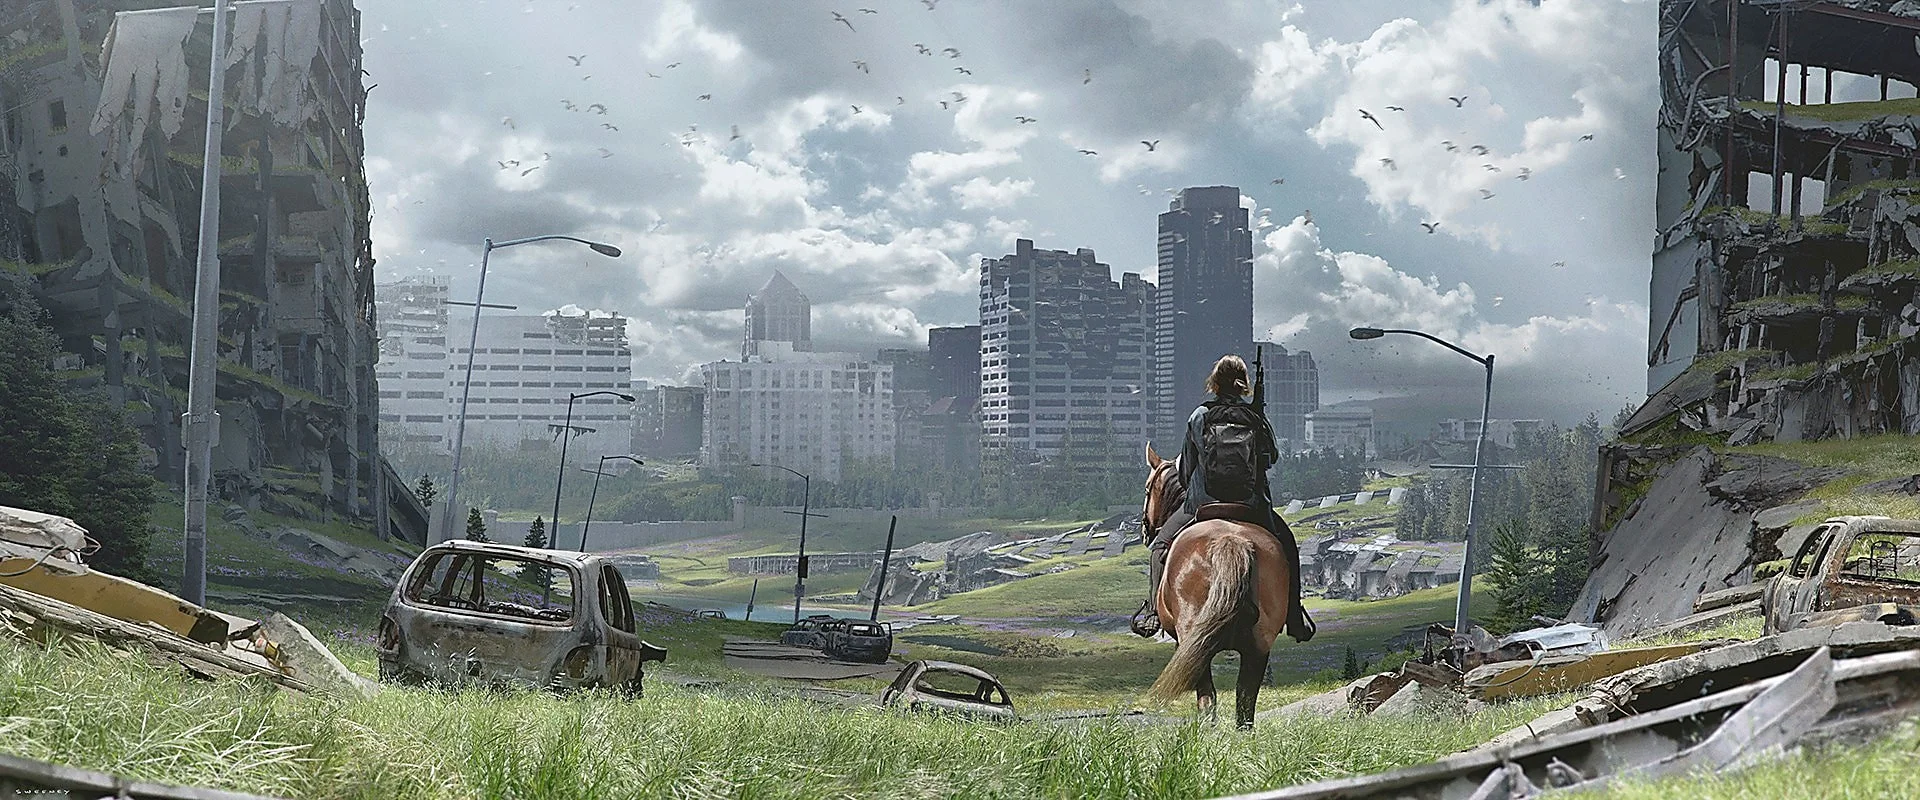 Элли с собакой: появились свежие концепты The Last of Us: Part II - фото 6